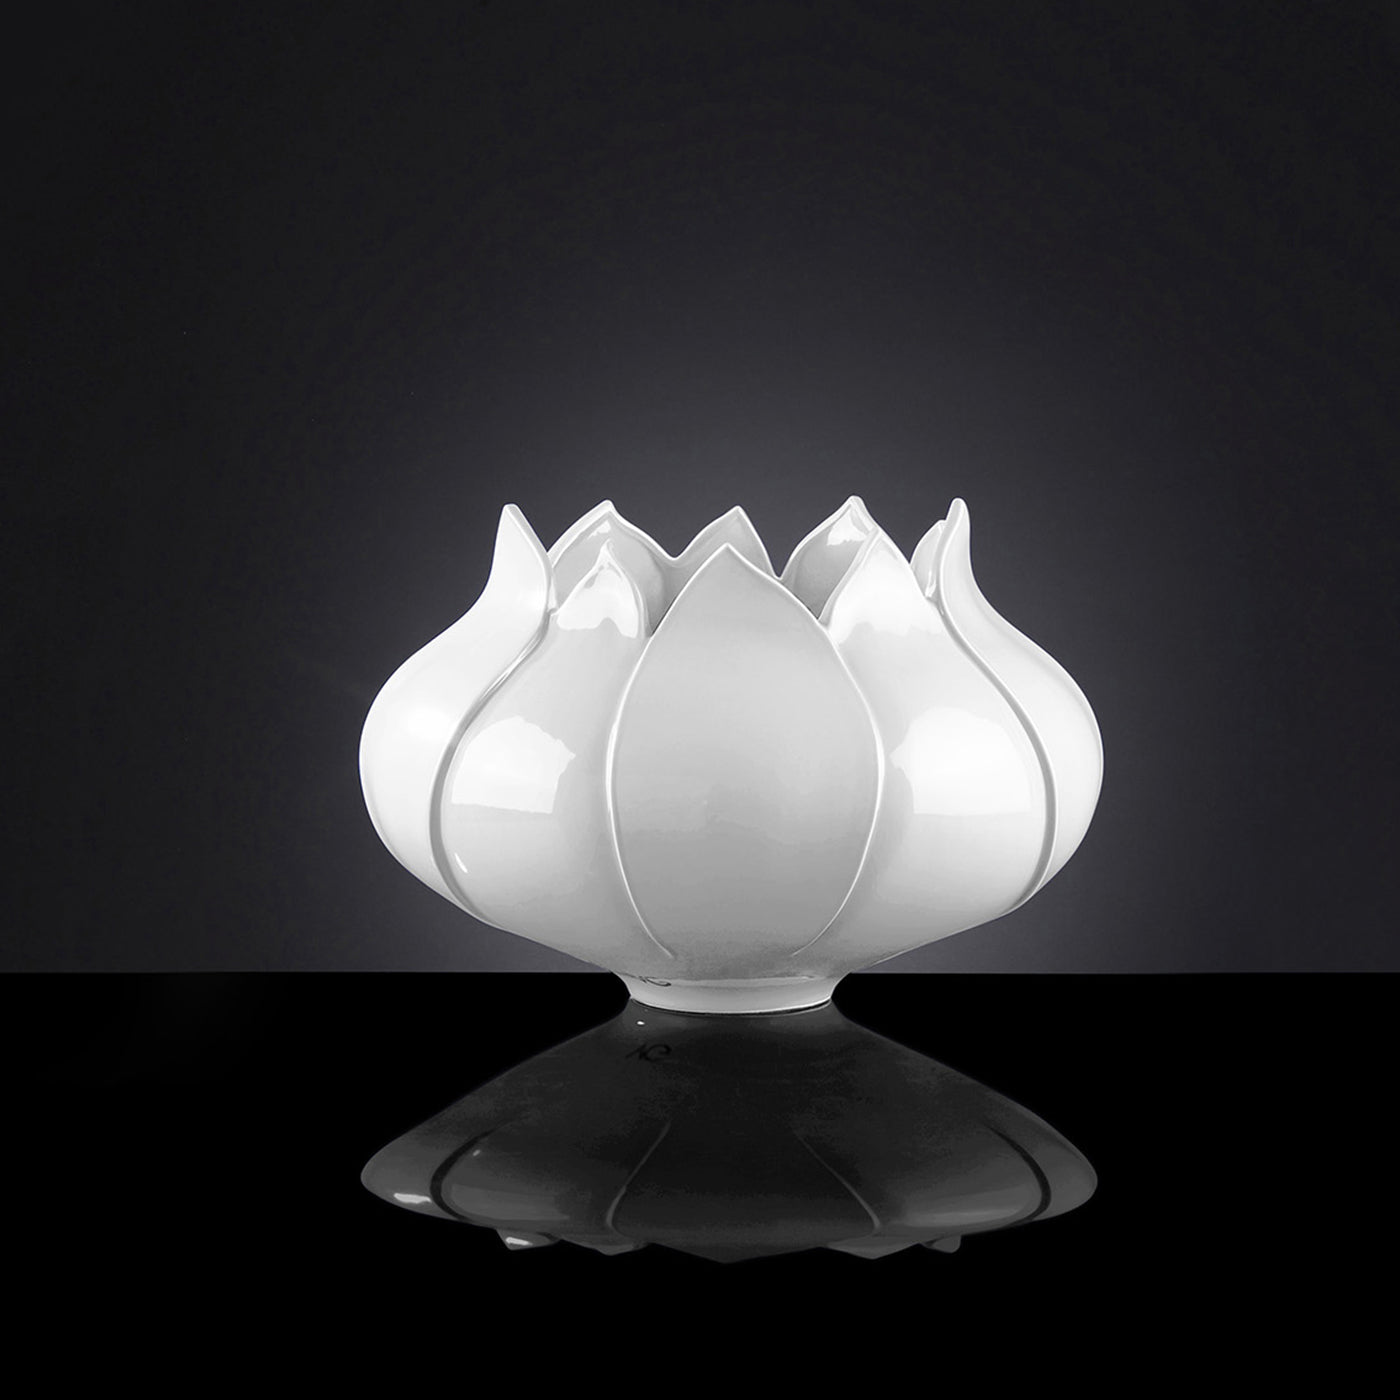 Tulipano Small White Vase - Alternative view 1